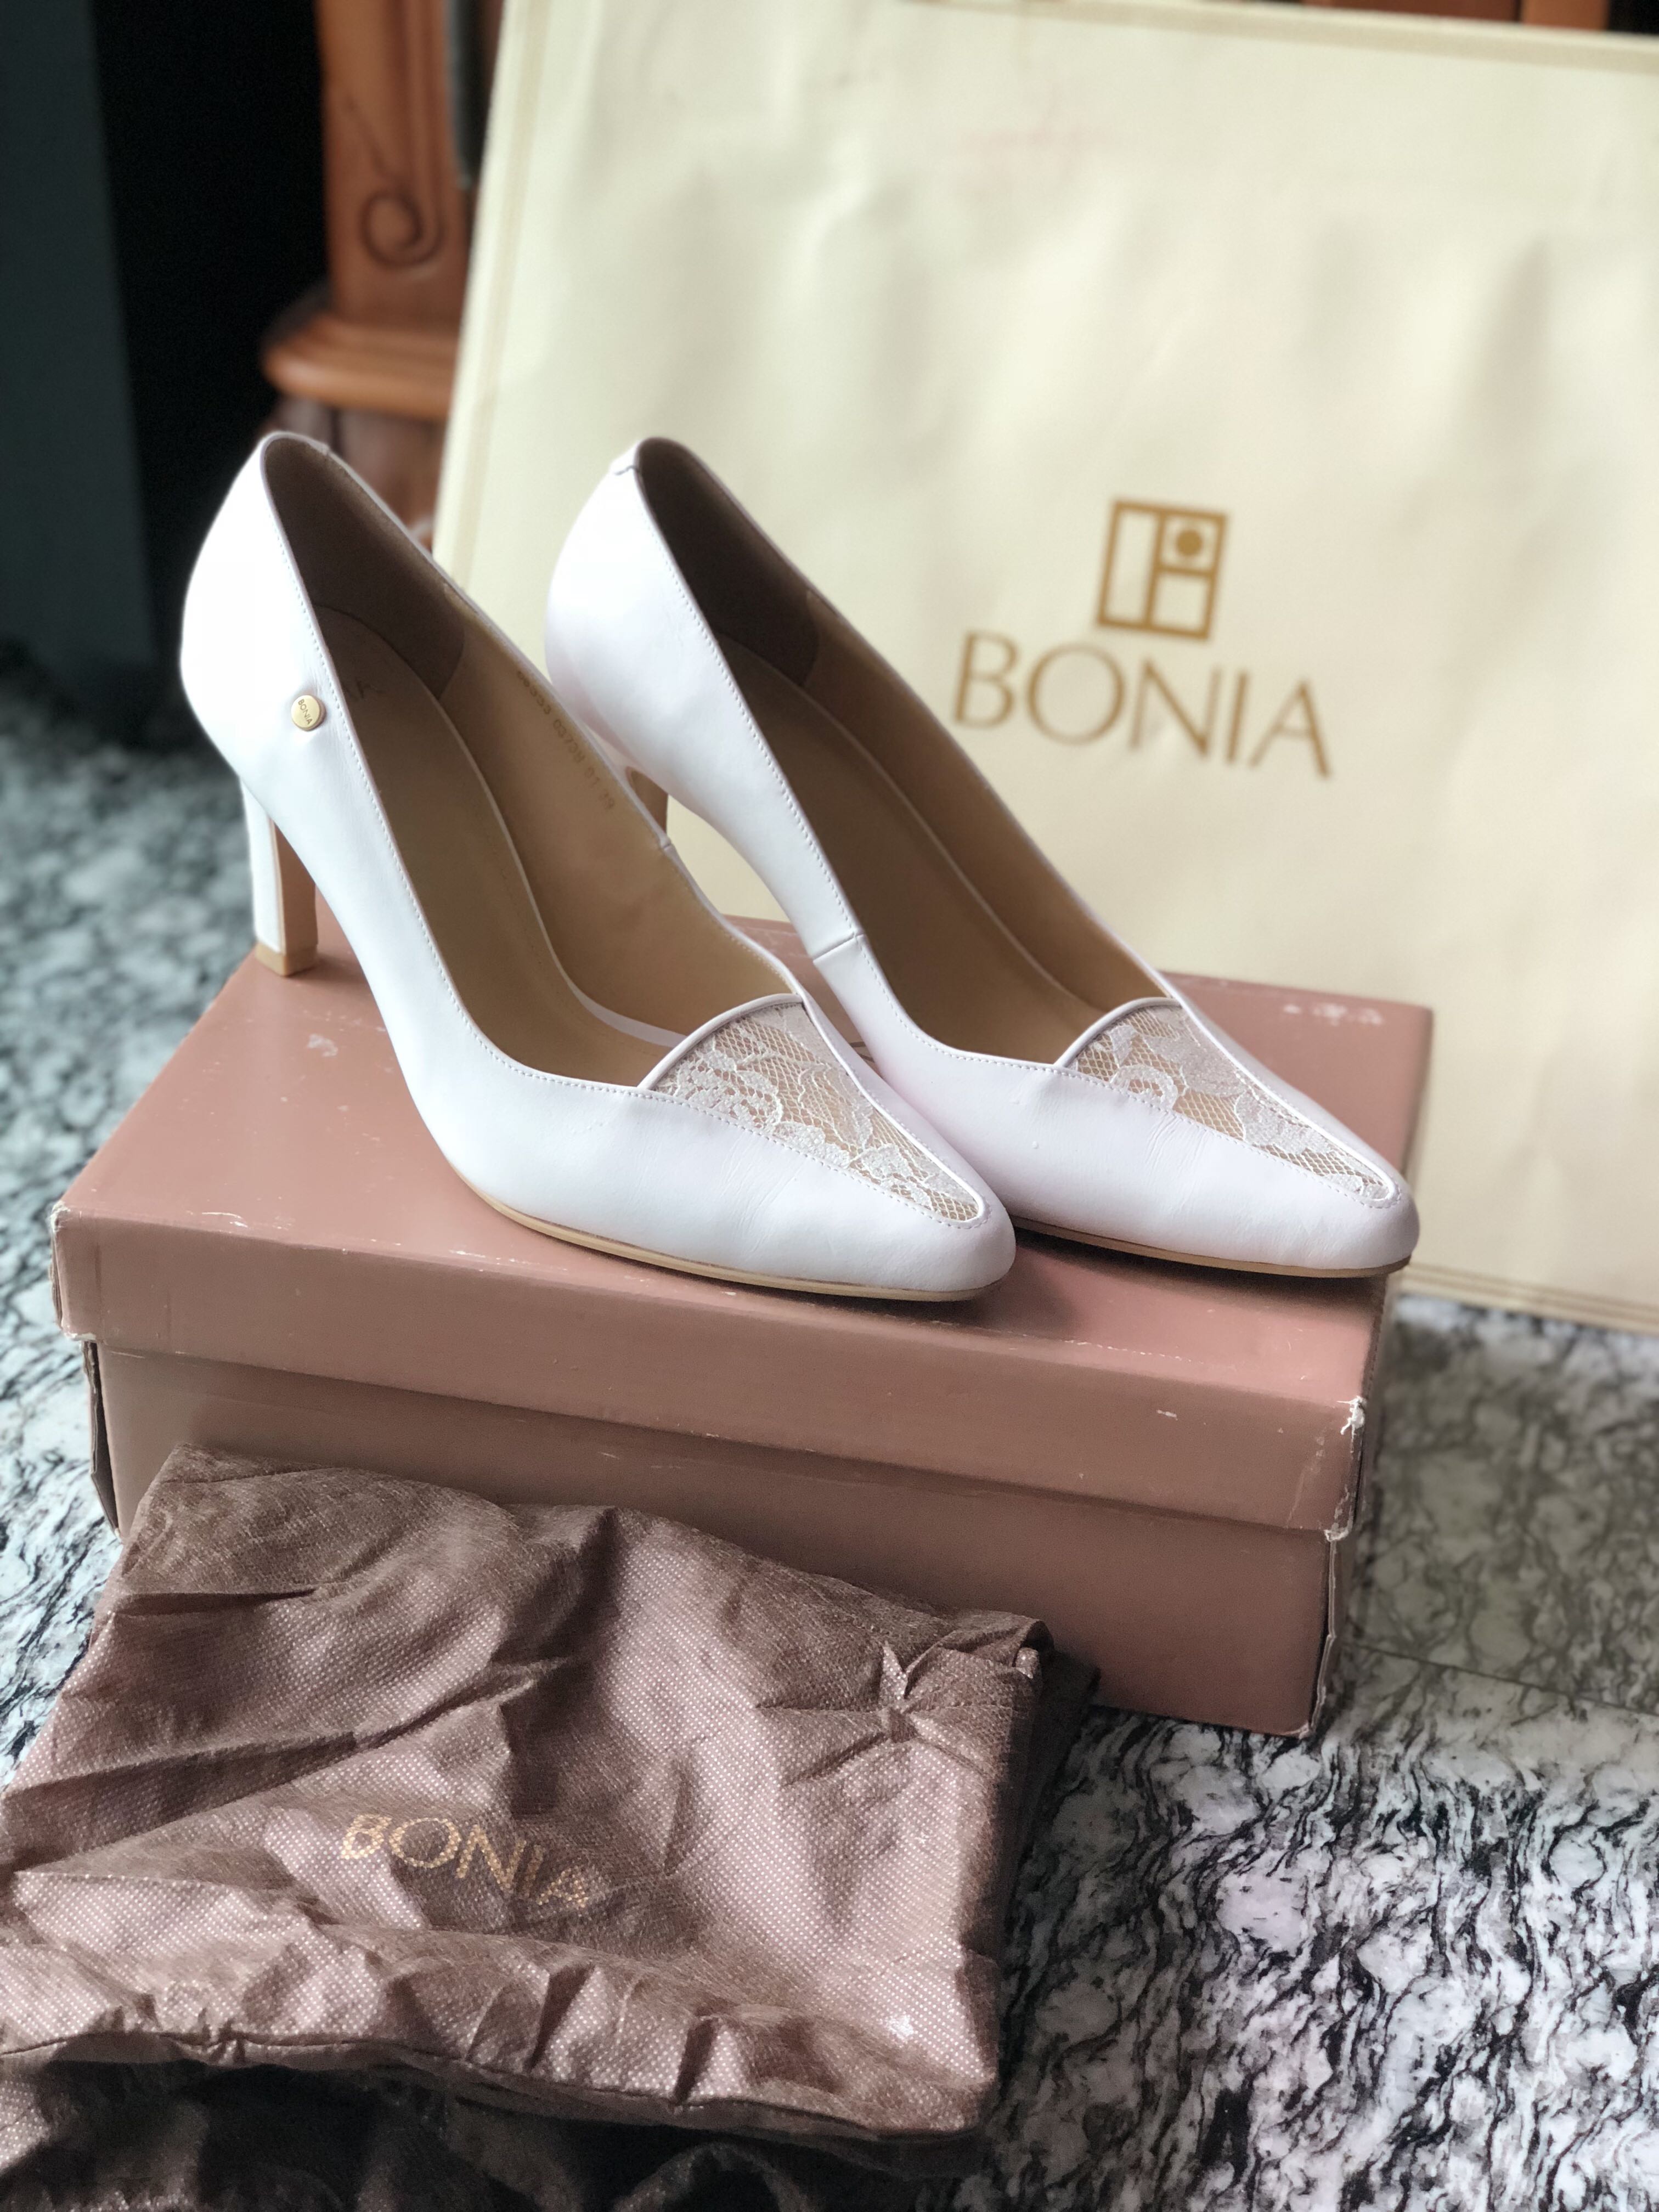 bonia women shoes